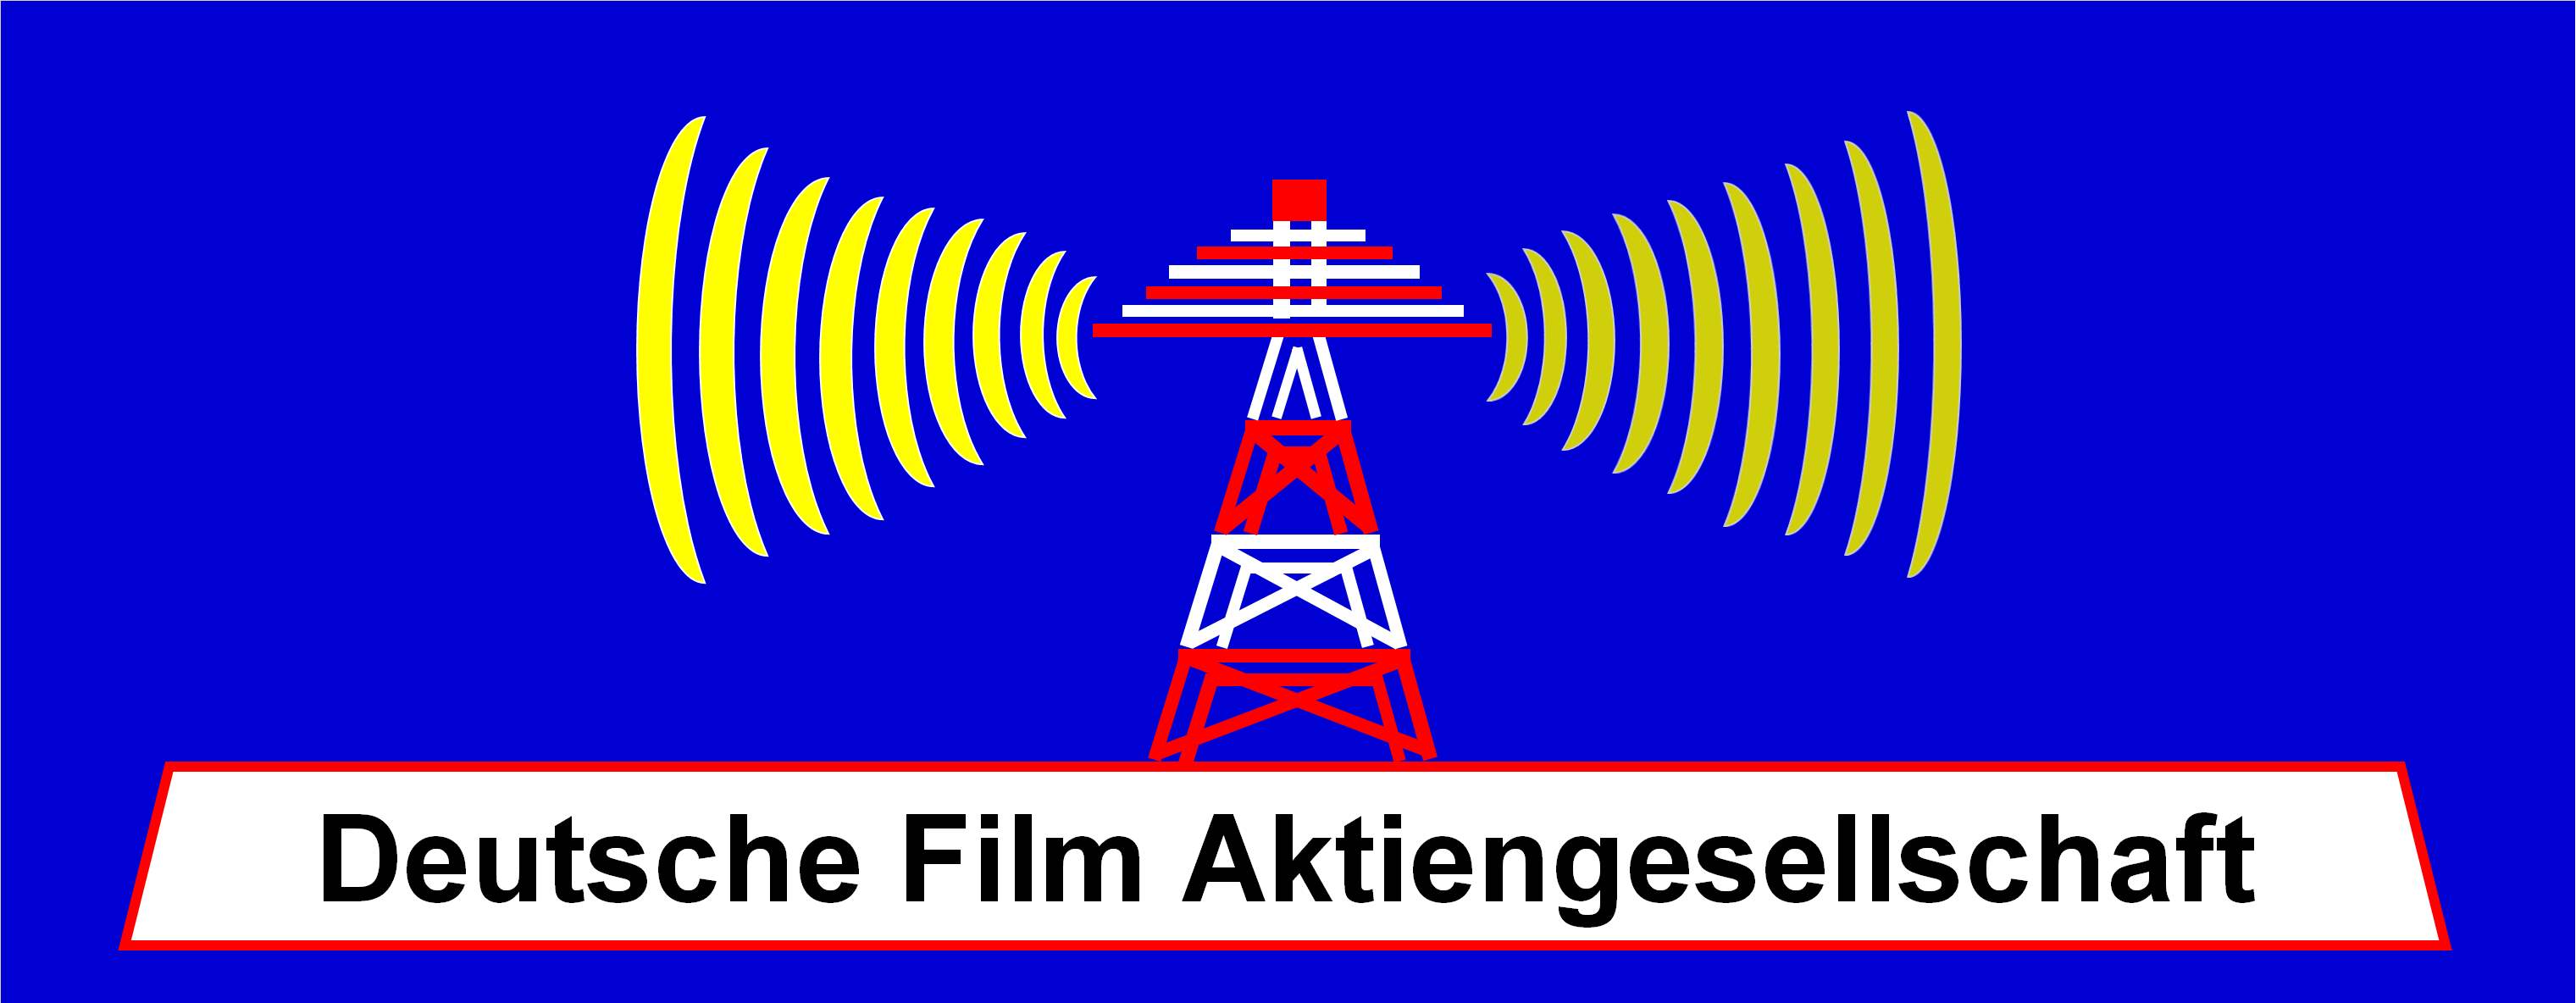 Deutsche Film Aktiengesellschaft